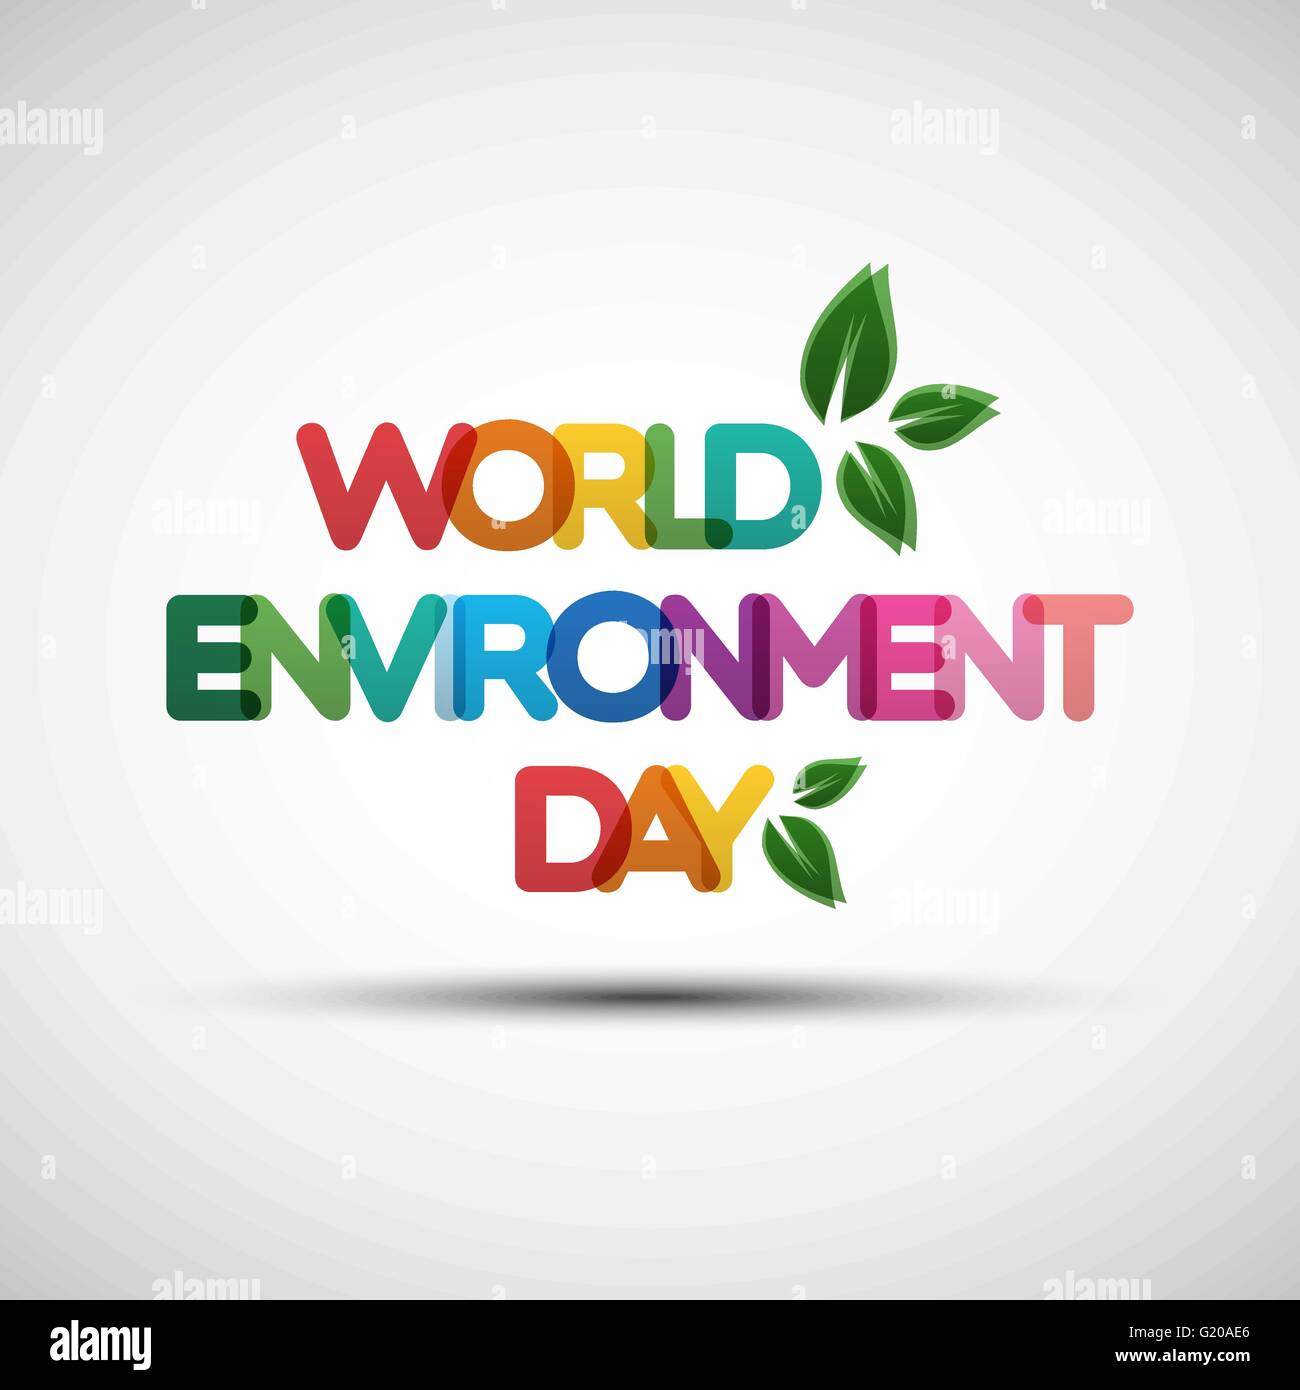 La journée mondiale de l'environnement de la typographie. Vector Illustration de la journée mondiale de l'environnement carte avec texte transparent multicolore créative Illustration de Vecteur